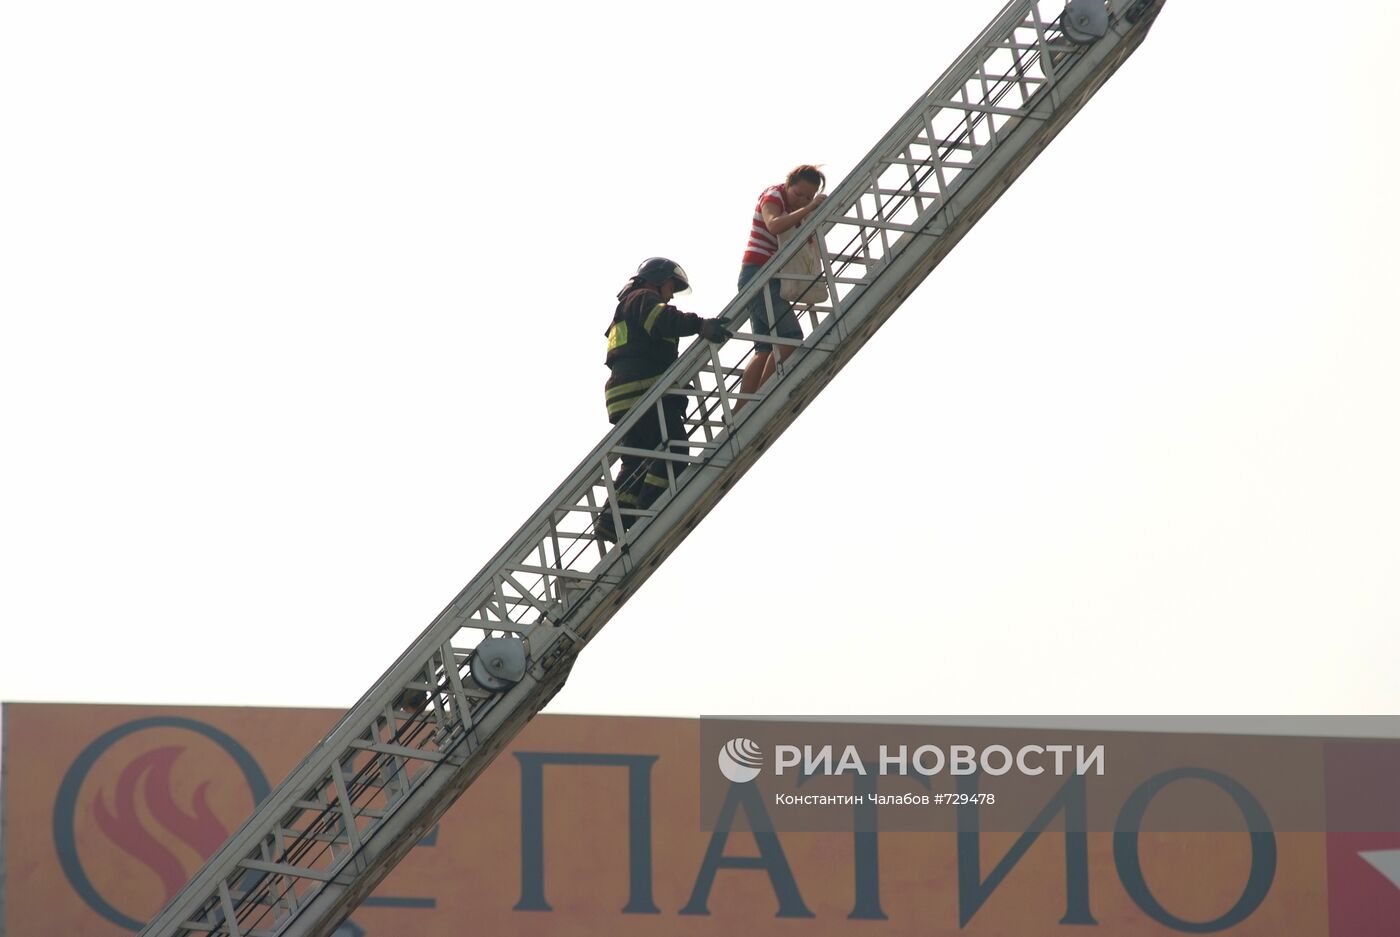 Пожар на площади Тверской заставы